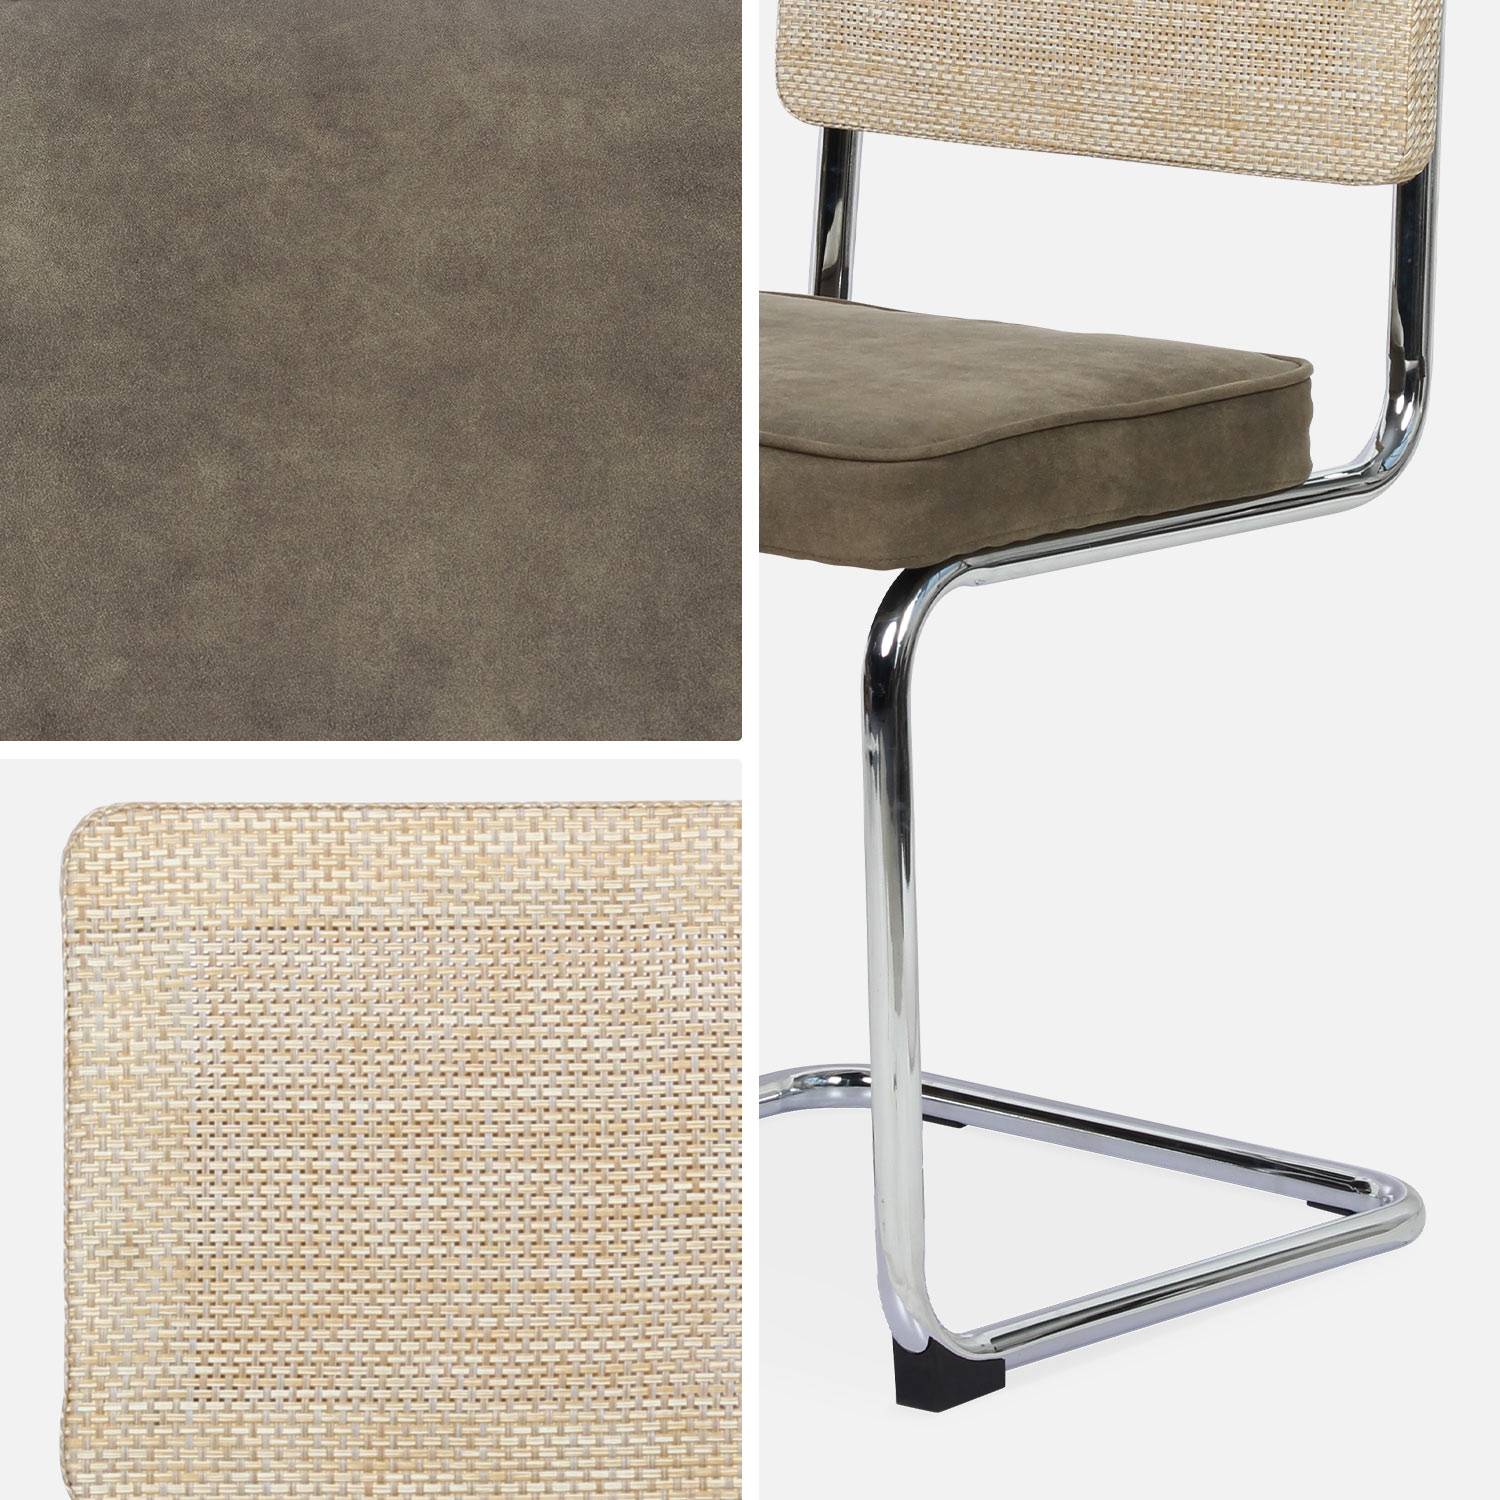 2 cadeiras cantilever - Maja - tecido caqui e resina com efeito rattan, 46 x 54,5 x 84,5 cm Photo8